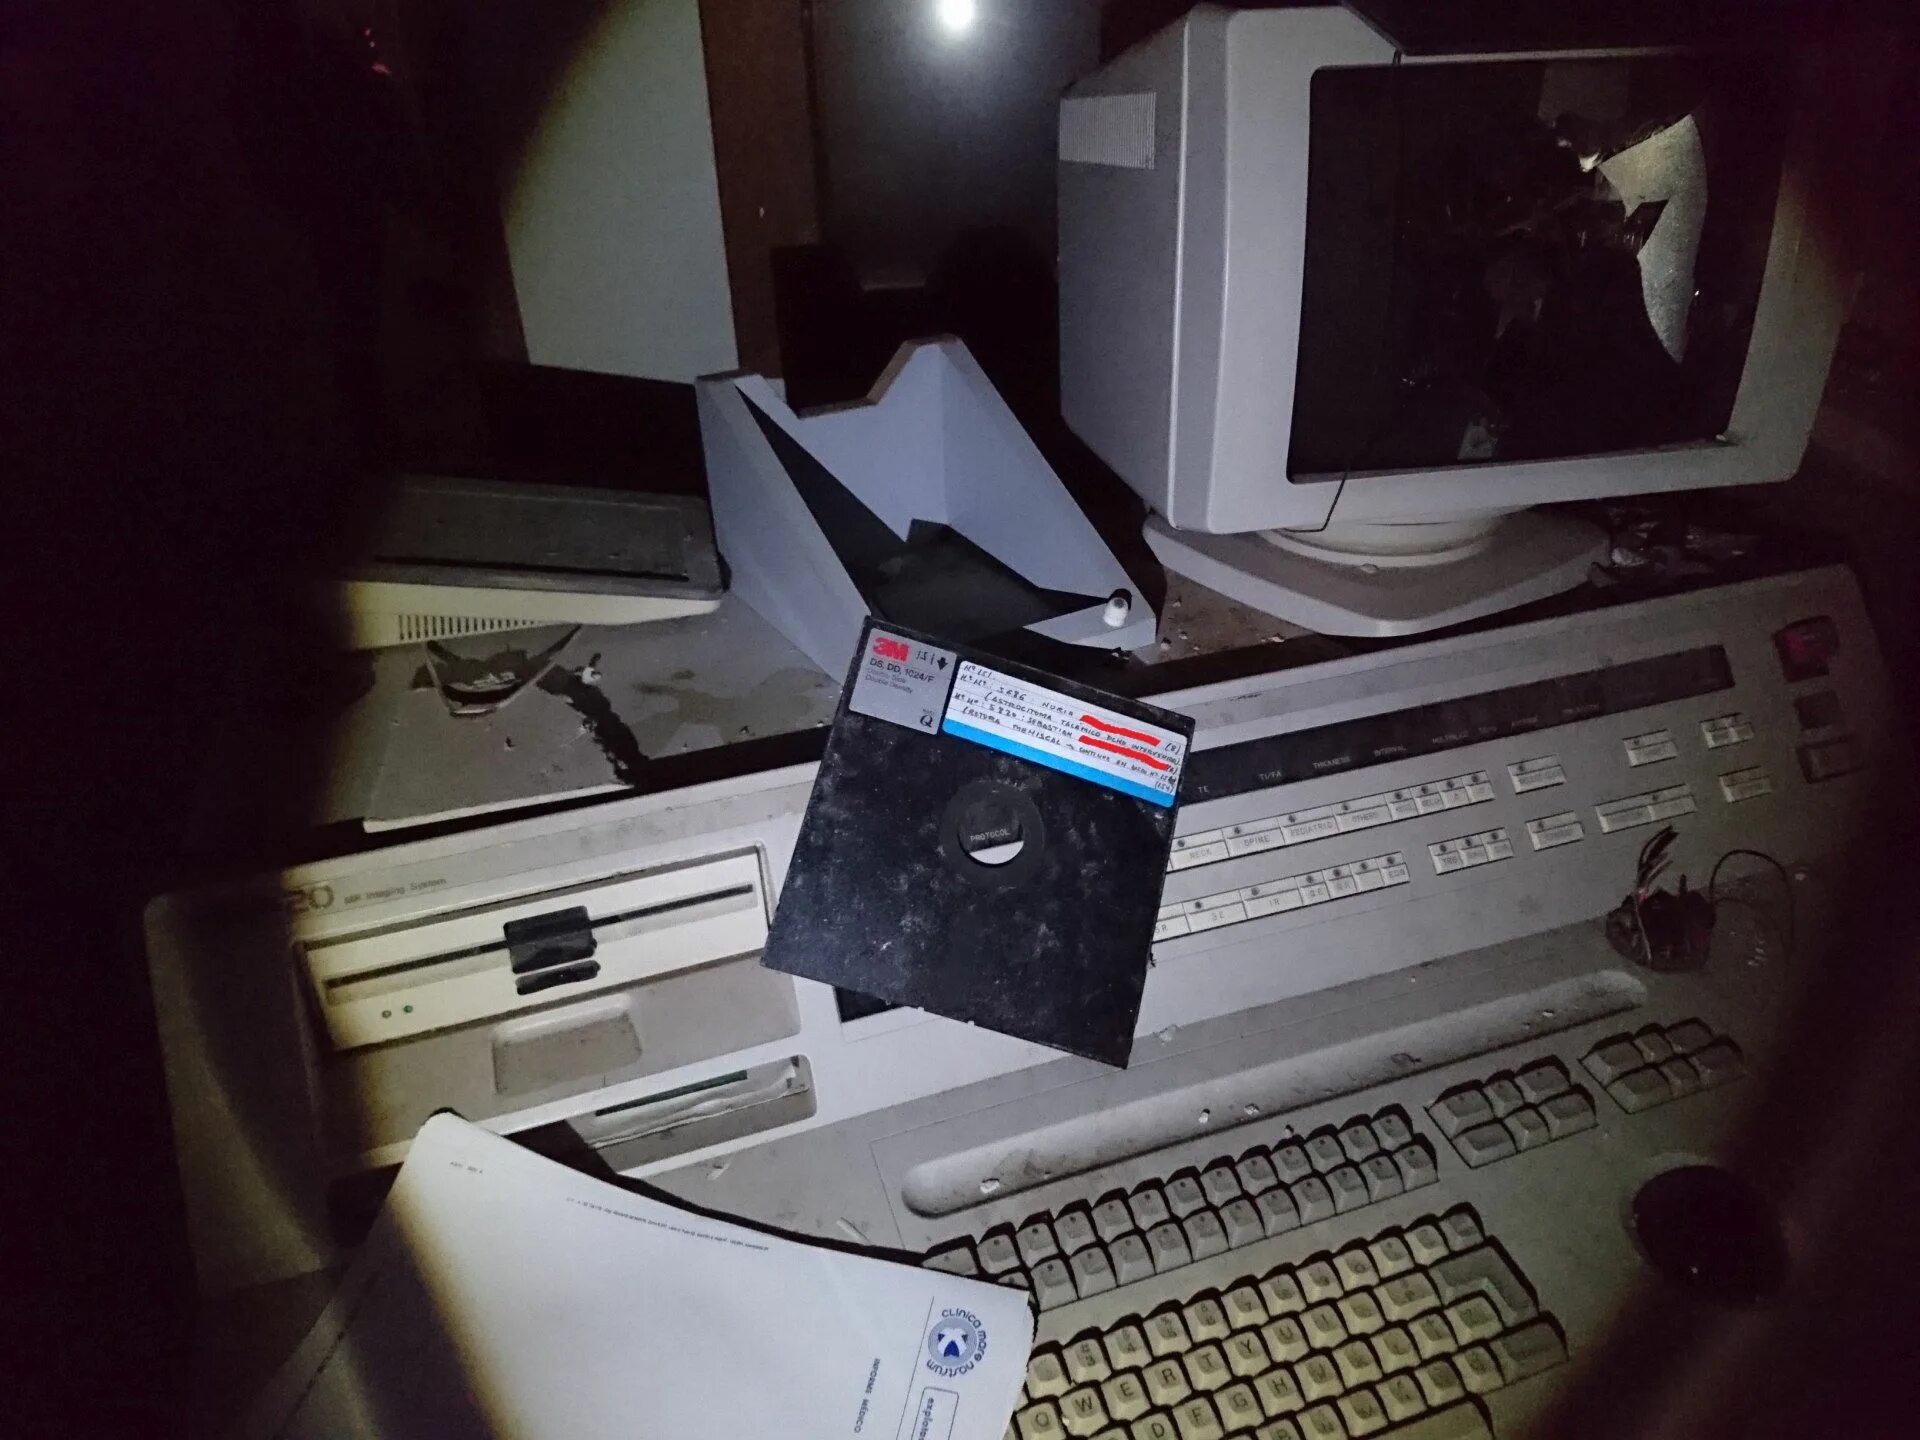 Дискета. Дискета фото. Компьютерные игры 70 годов на дискете. Cyberpunk floppy Disk. Control old